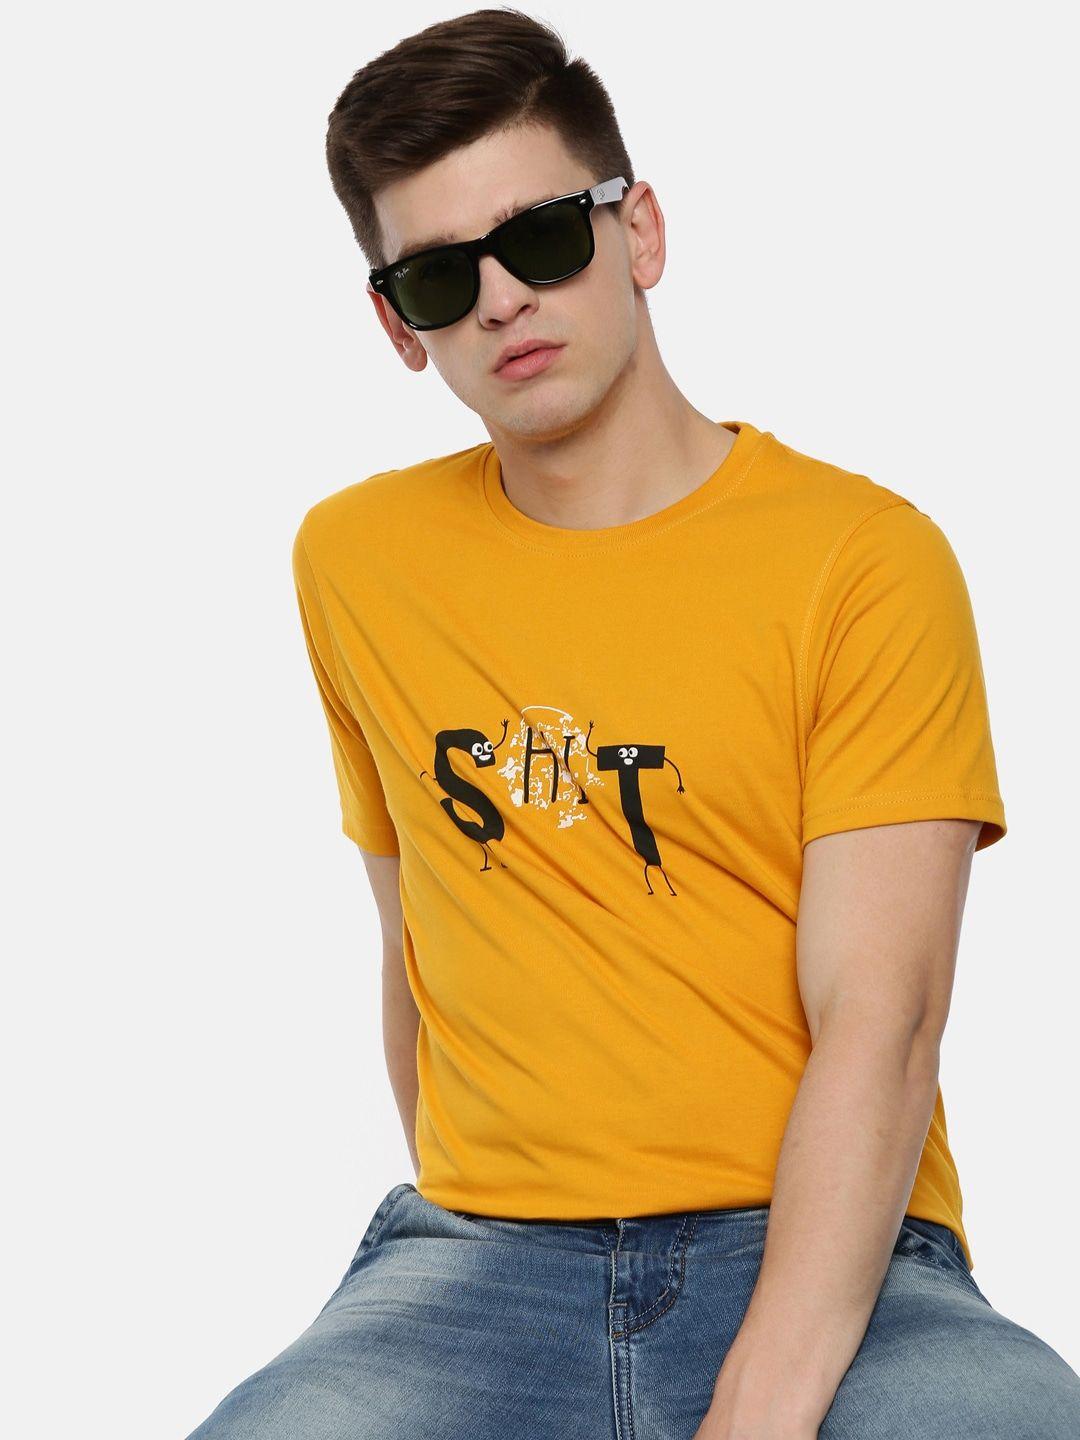 bushirt men mustard yellow & black printed detail round neck t-shirt